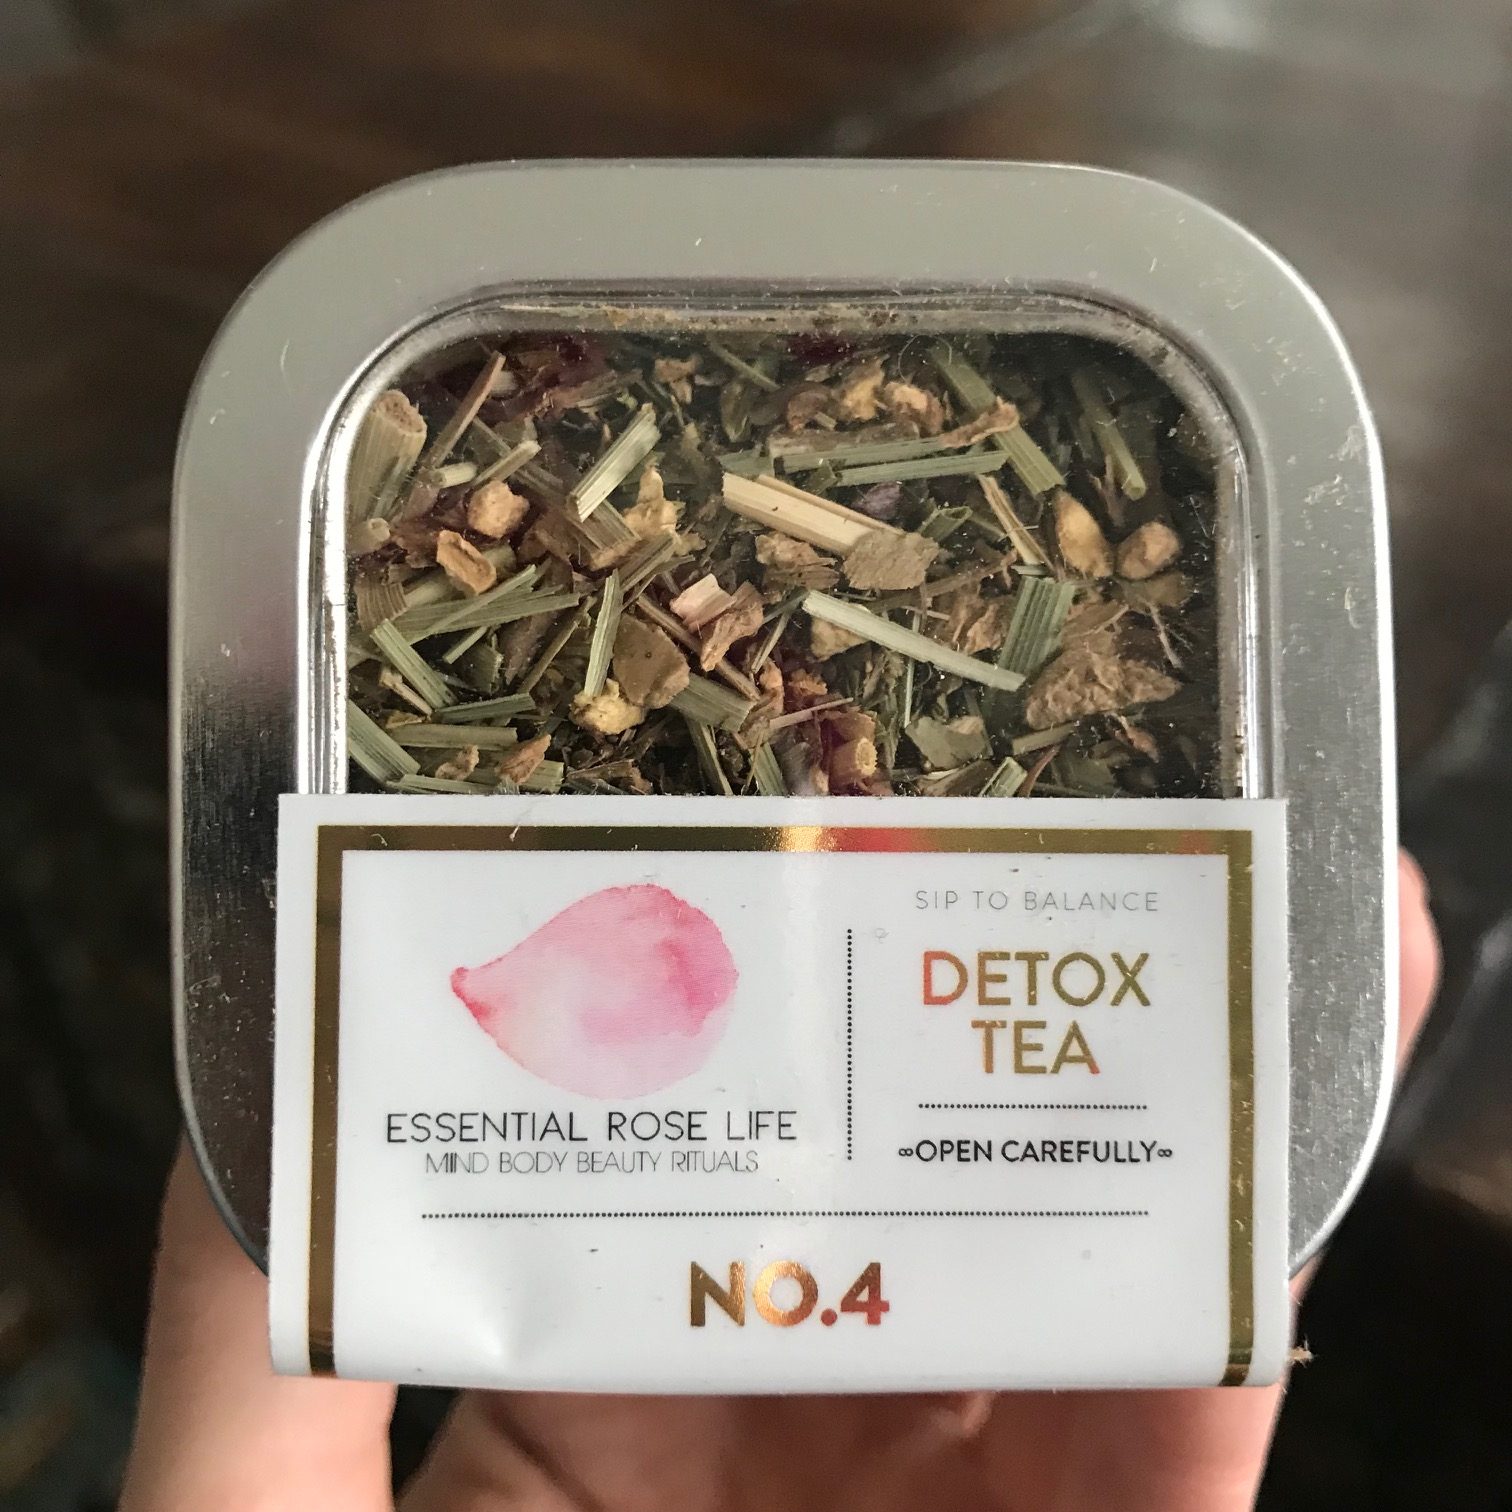 Essential Rose Life Detox Tea